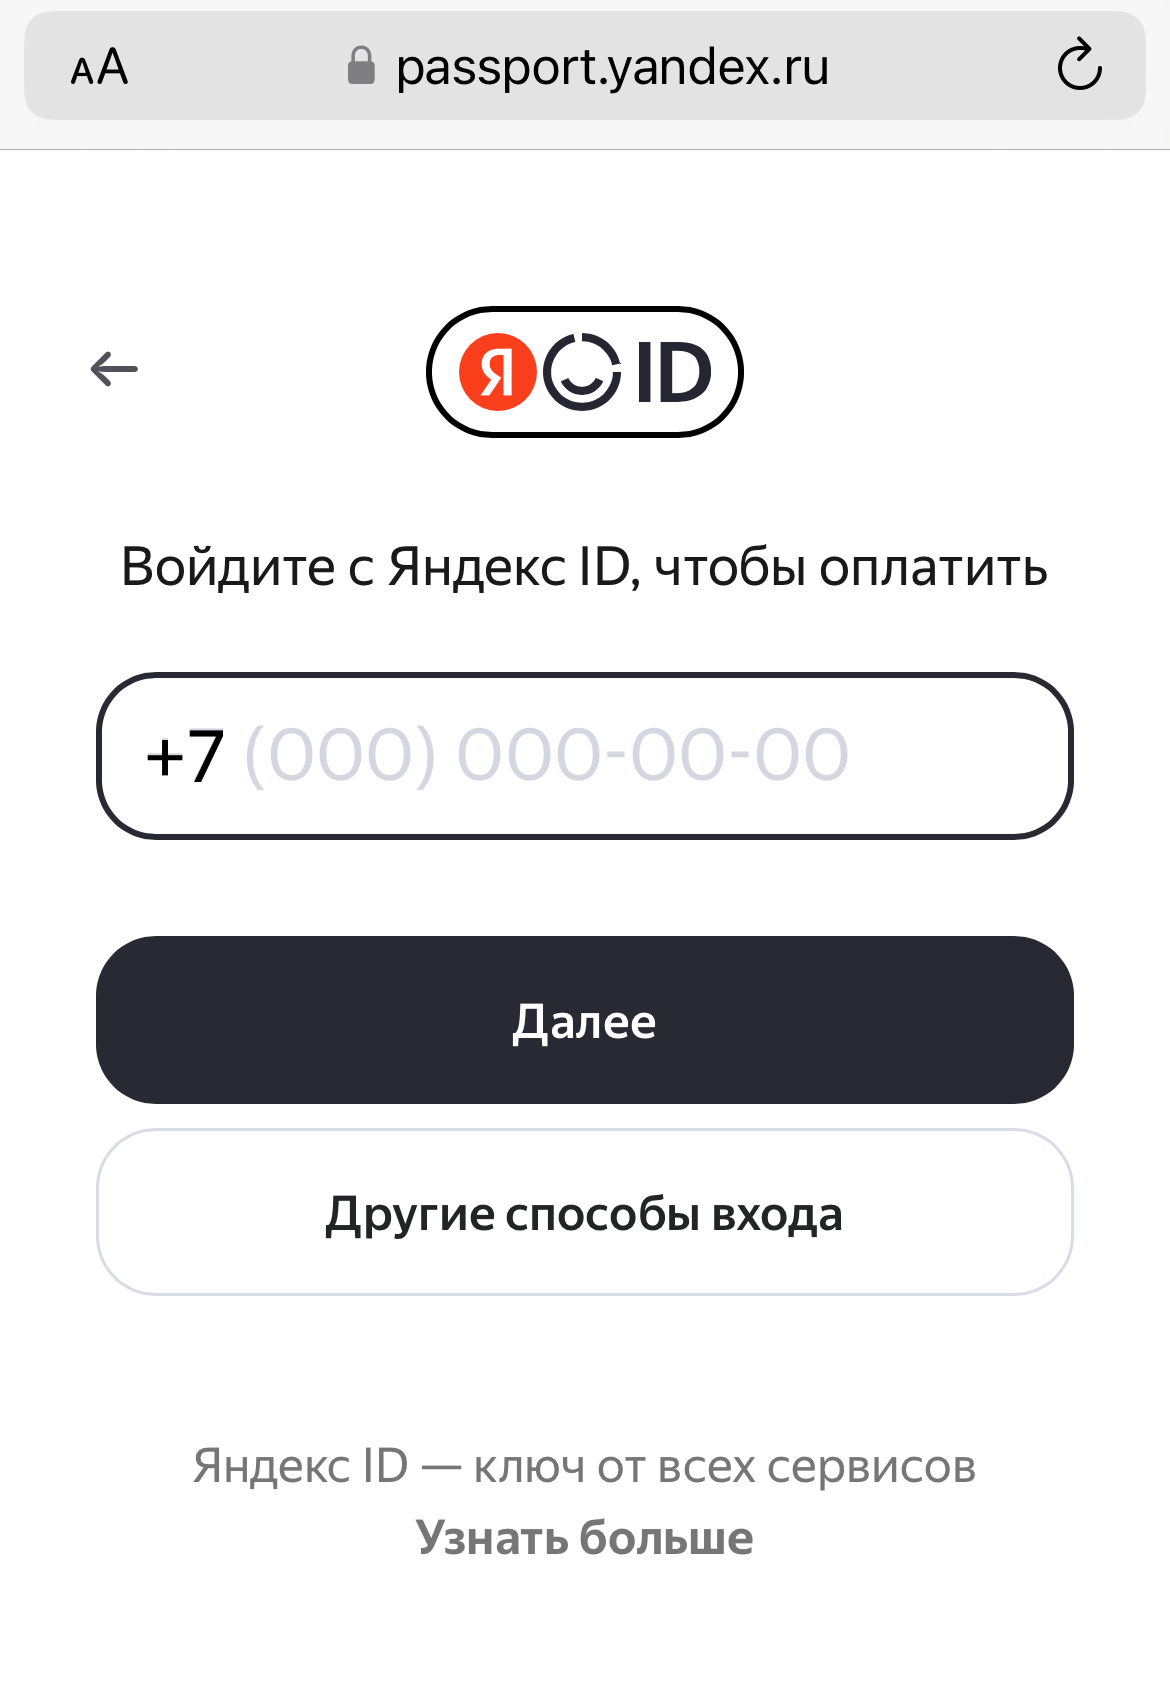 <p>Авторизуйтесь в аккаунте Яндекс по номеру телефона	</p>